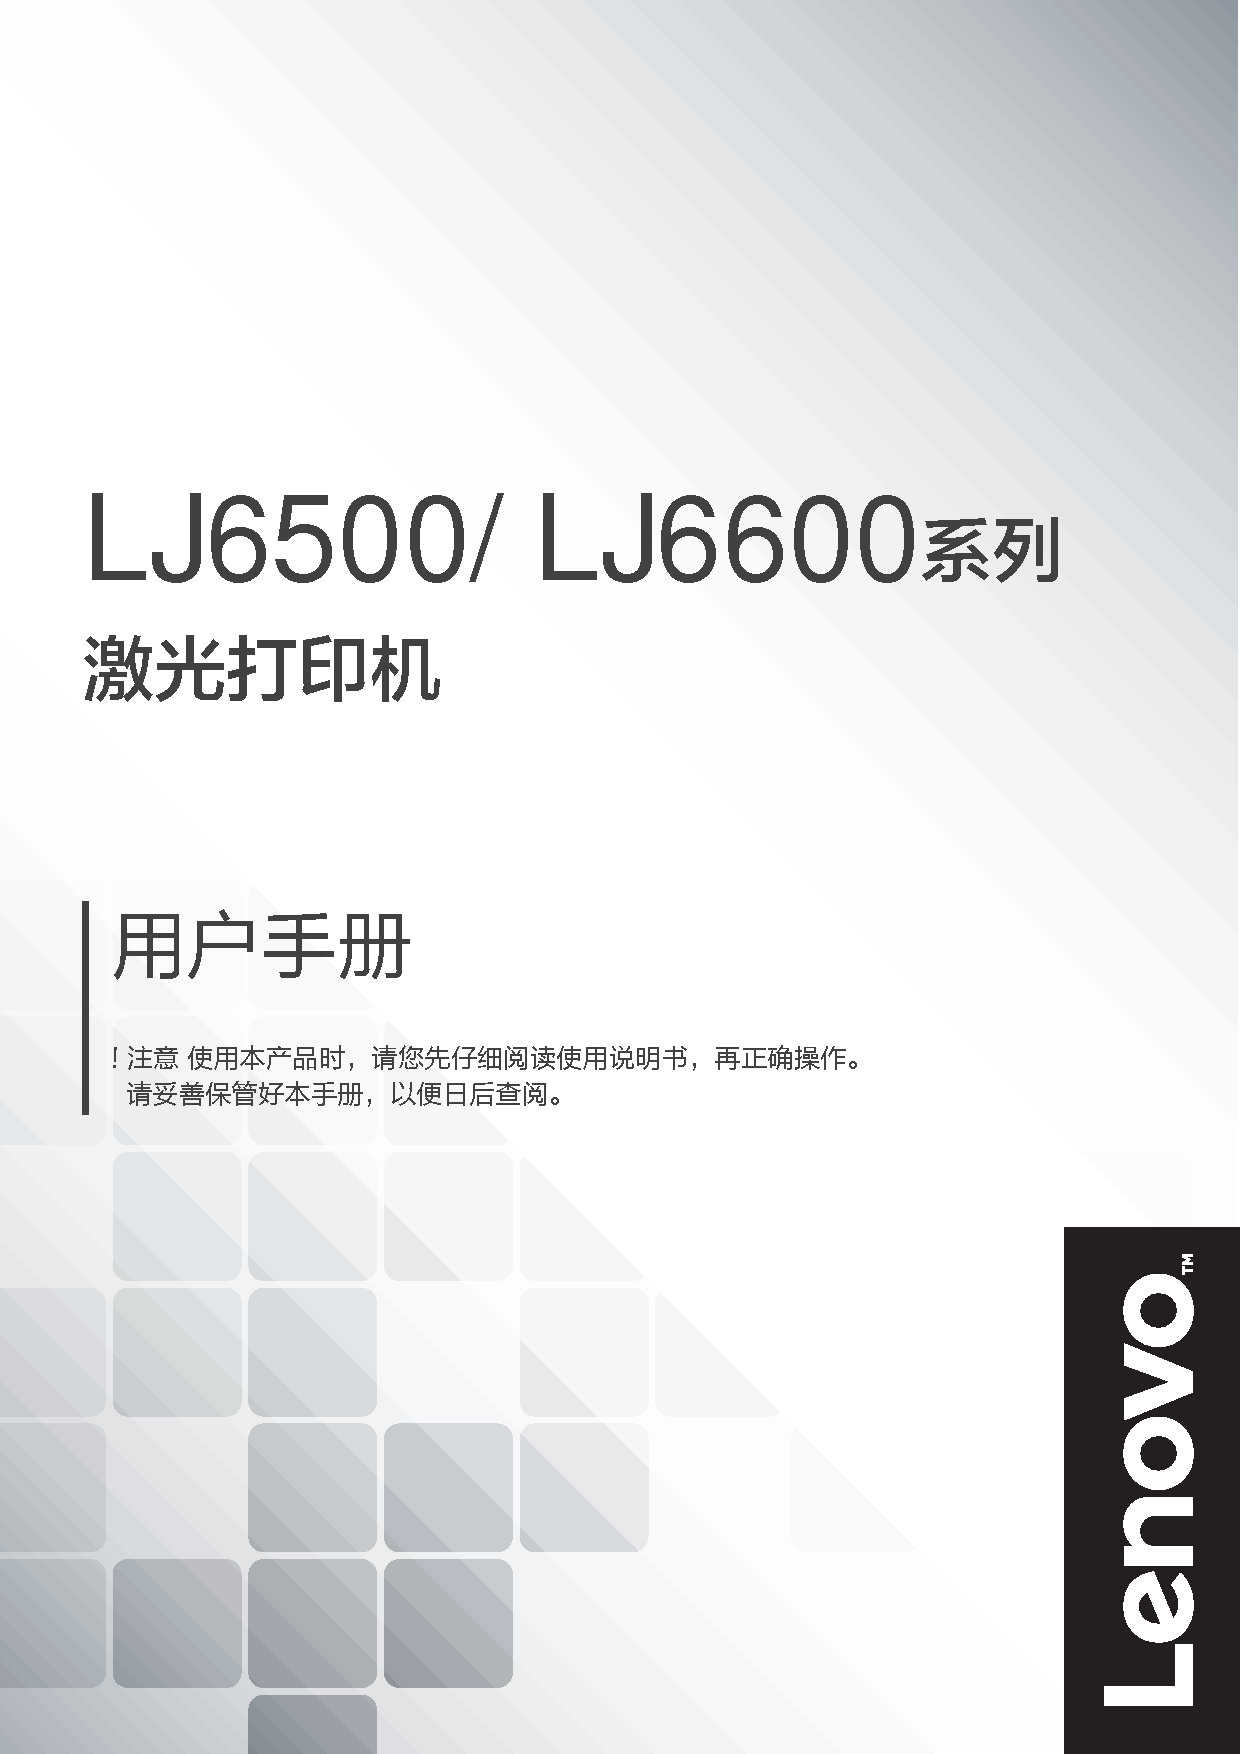 联想 Lenovo LJ6500 用户手册 封面